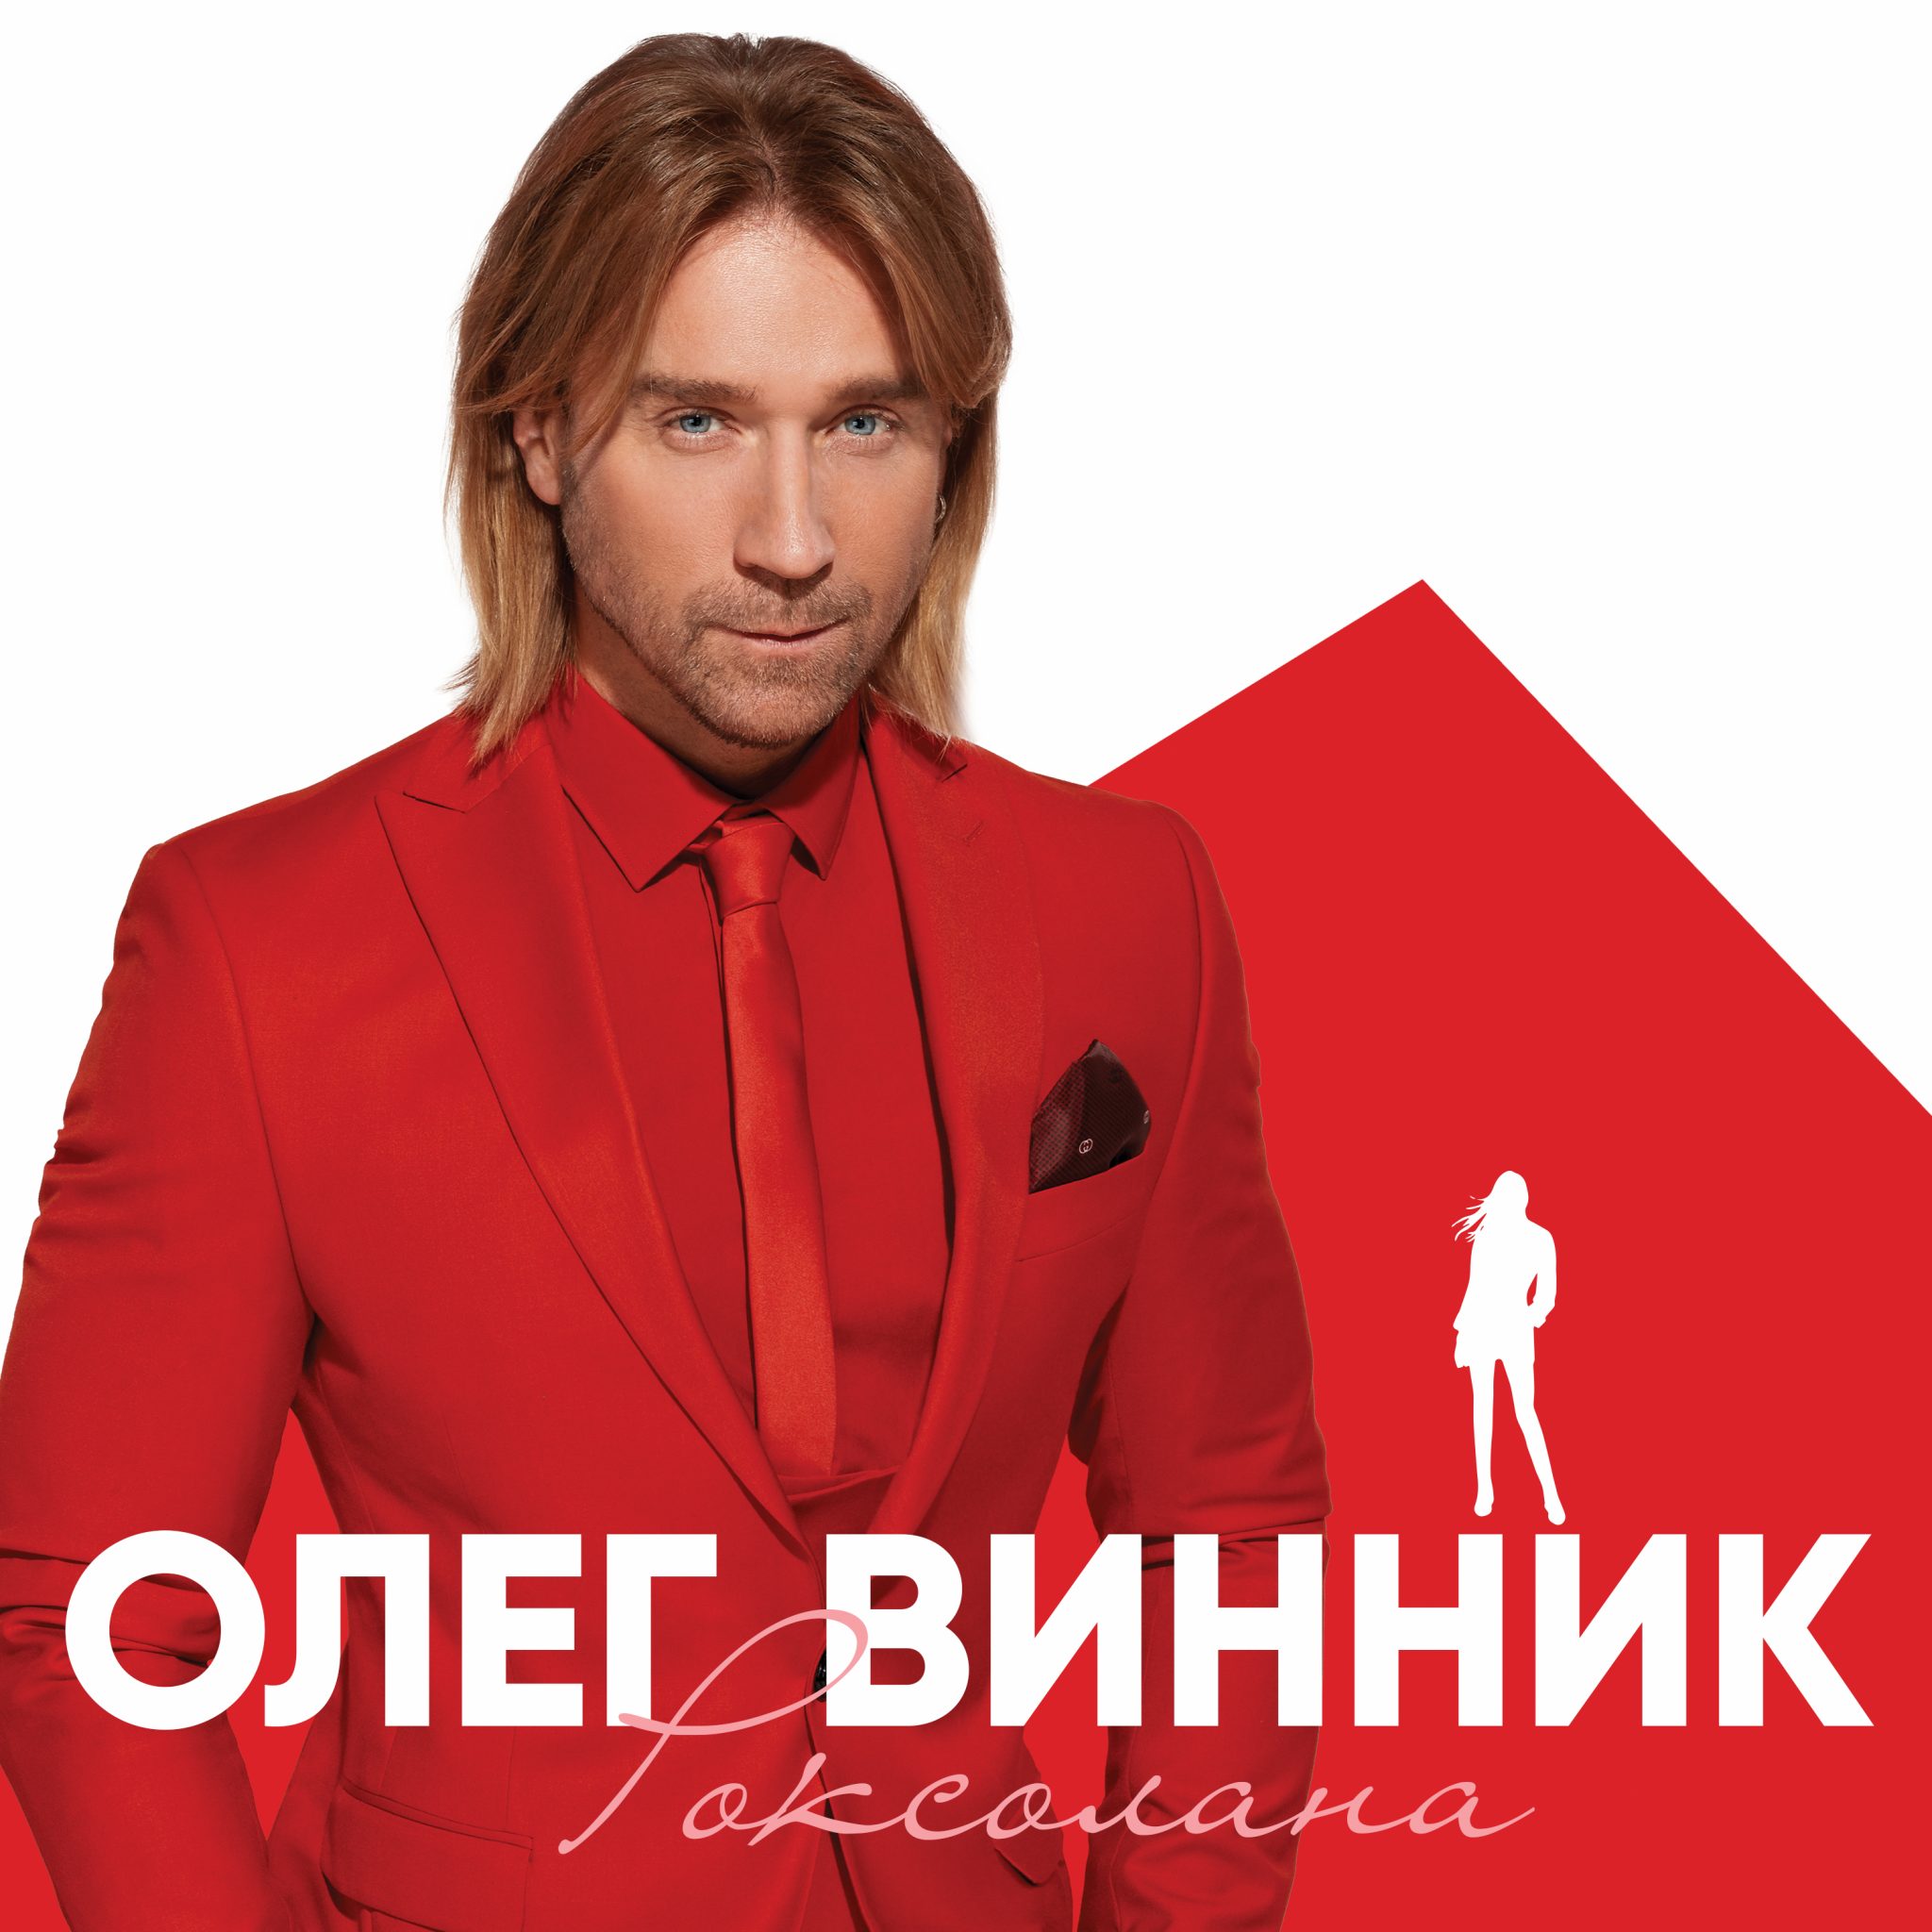 Олег Винник порадовал премьерой песни Роксолана